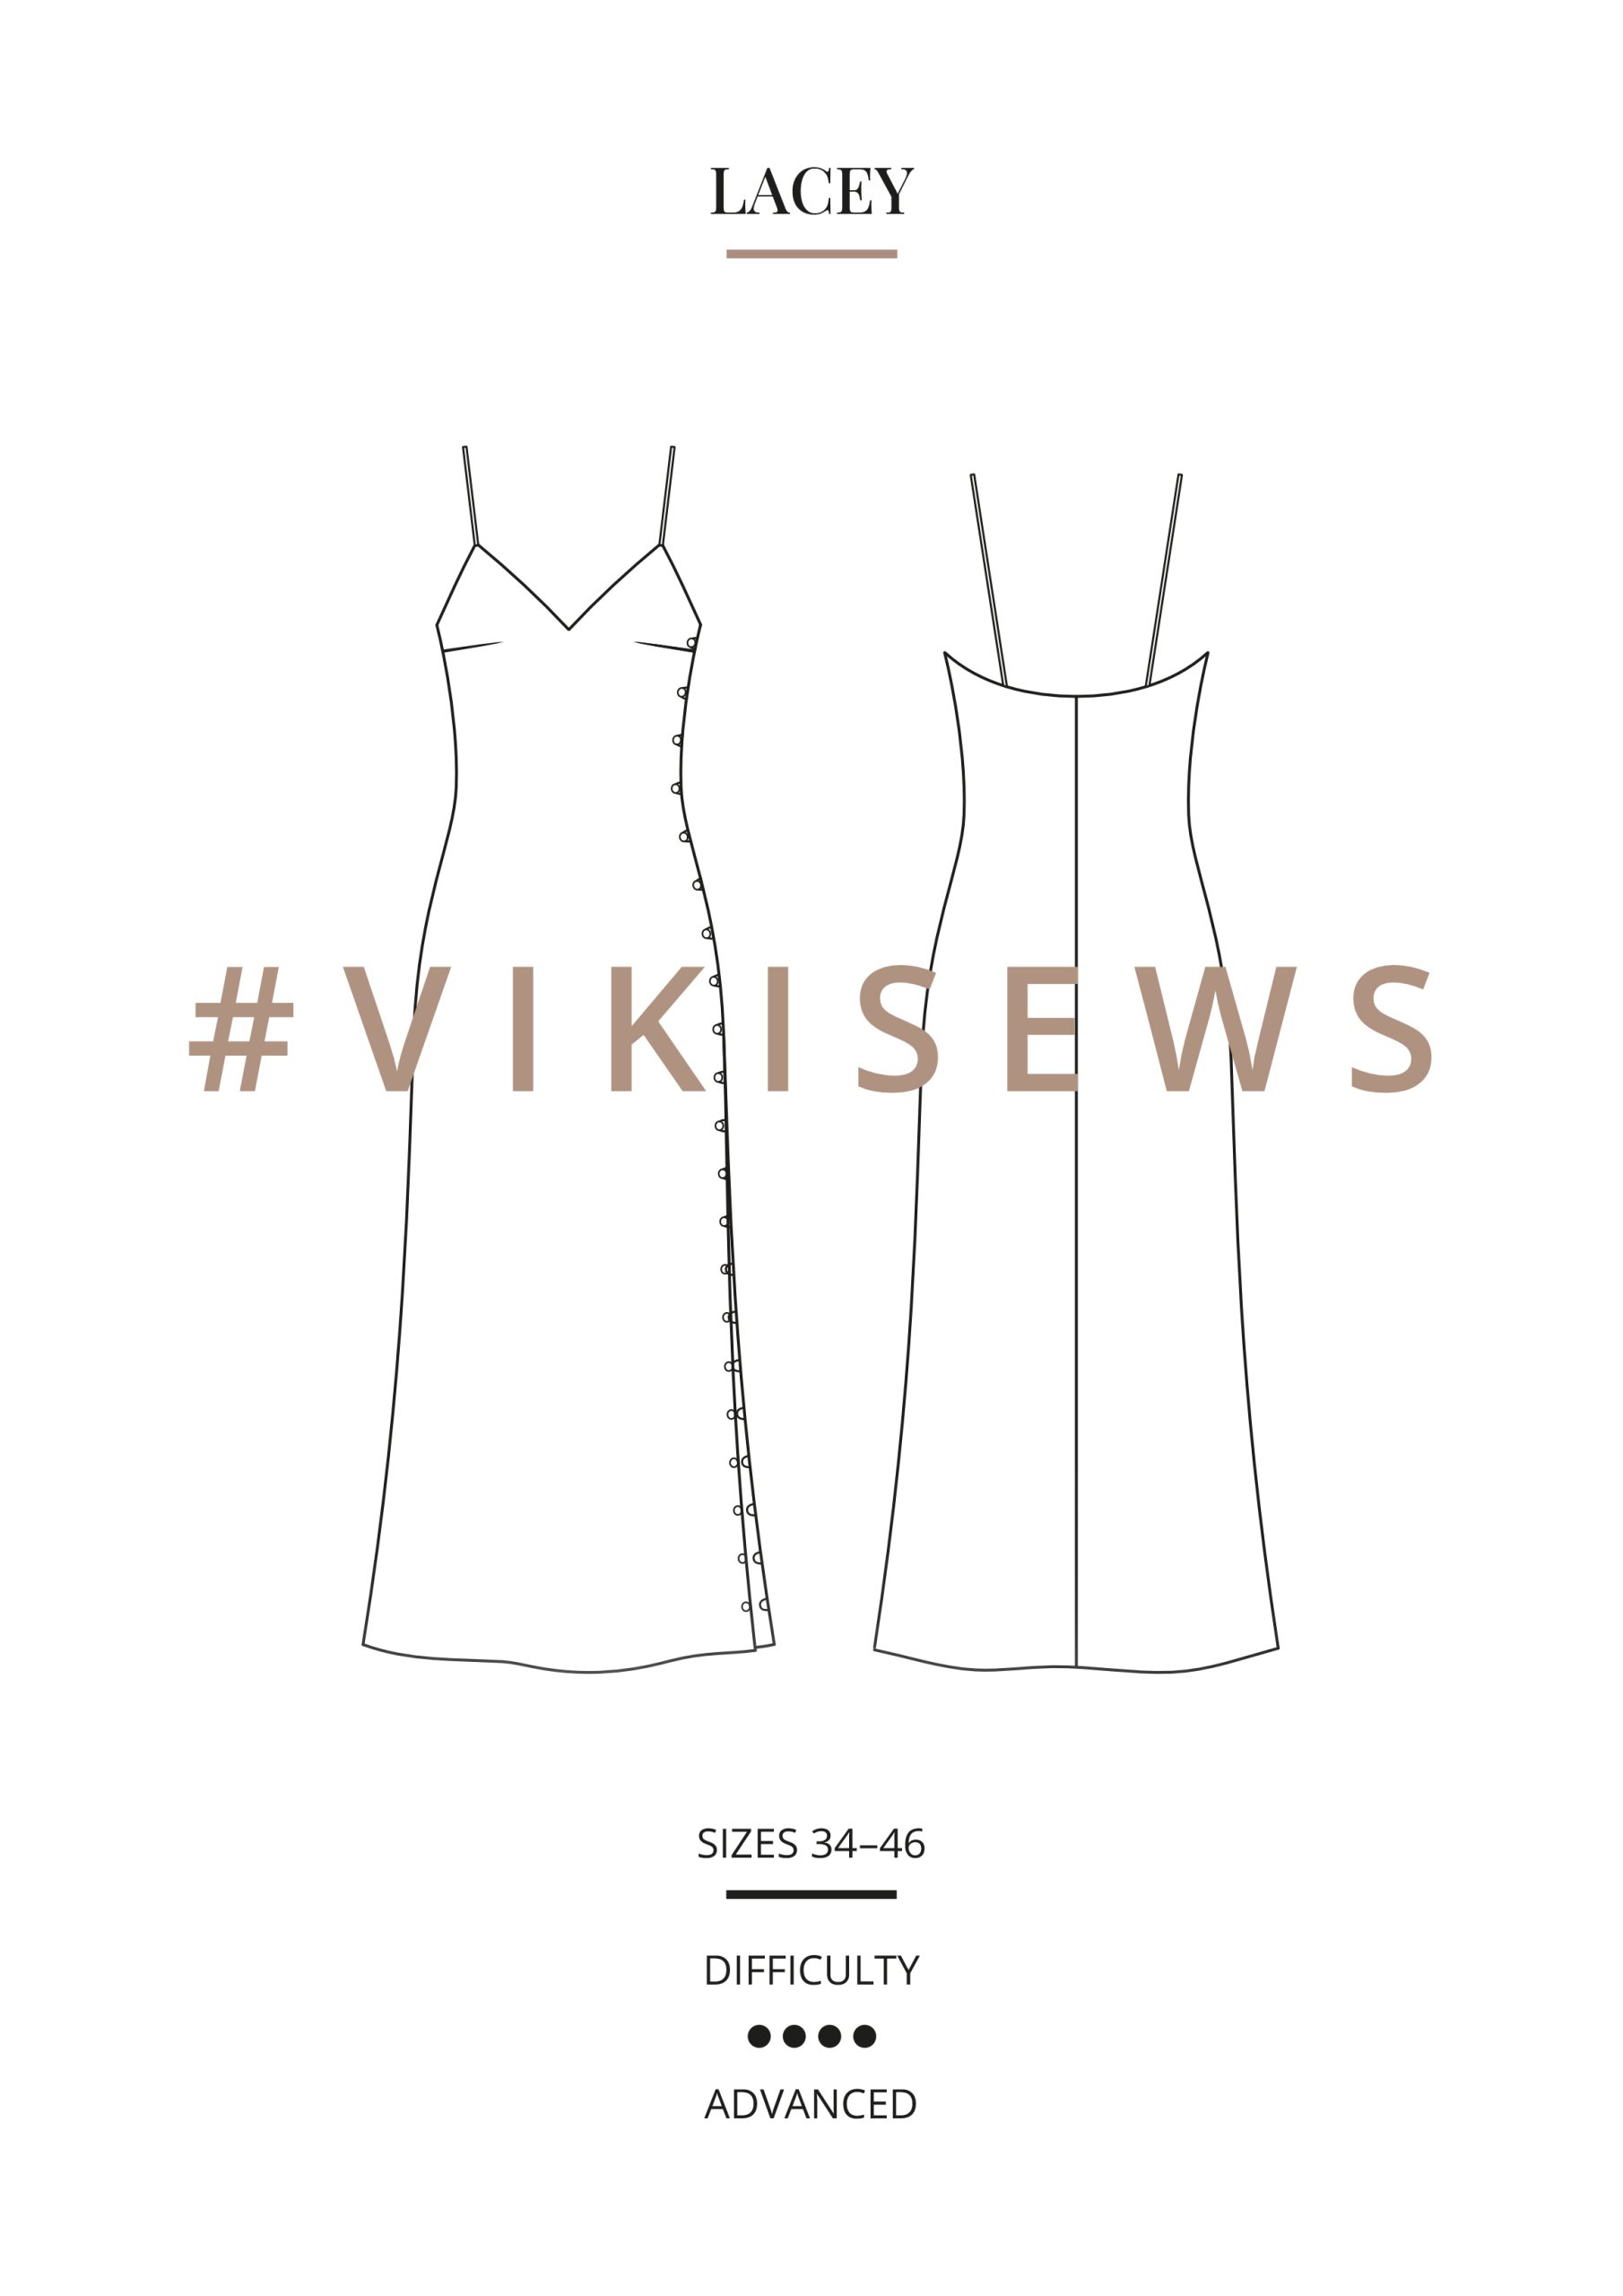 Vikisews Lacey Dress PDF